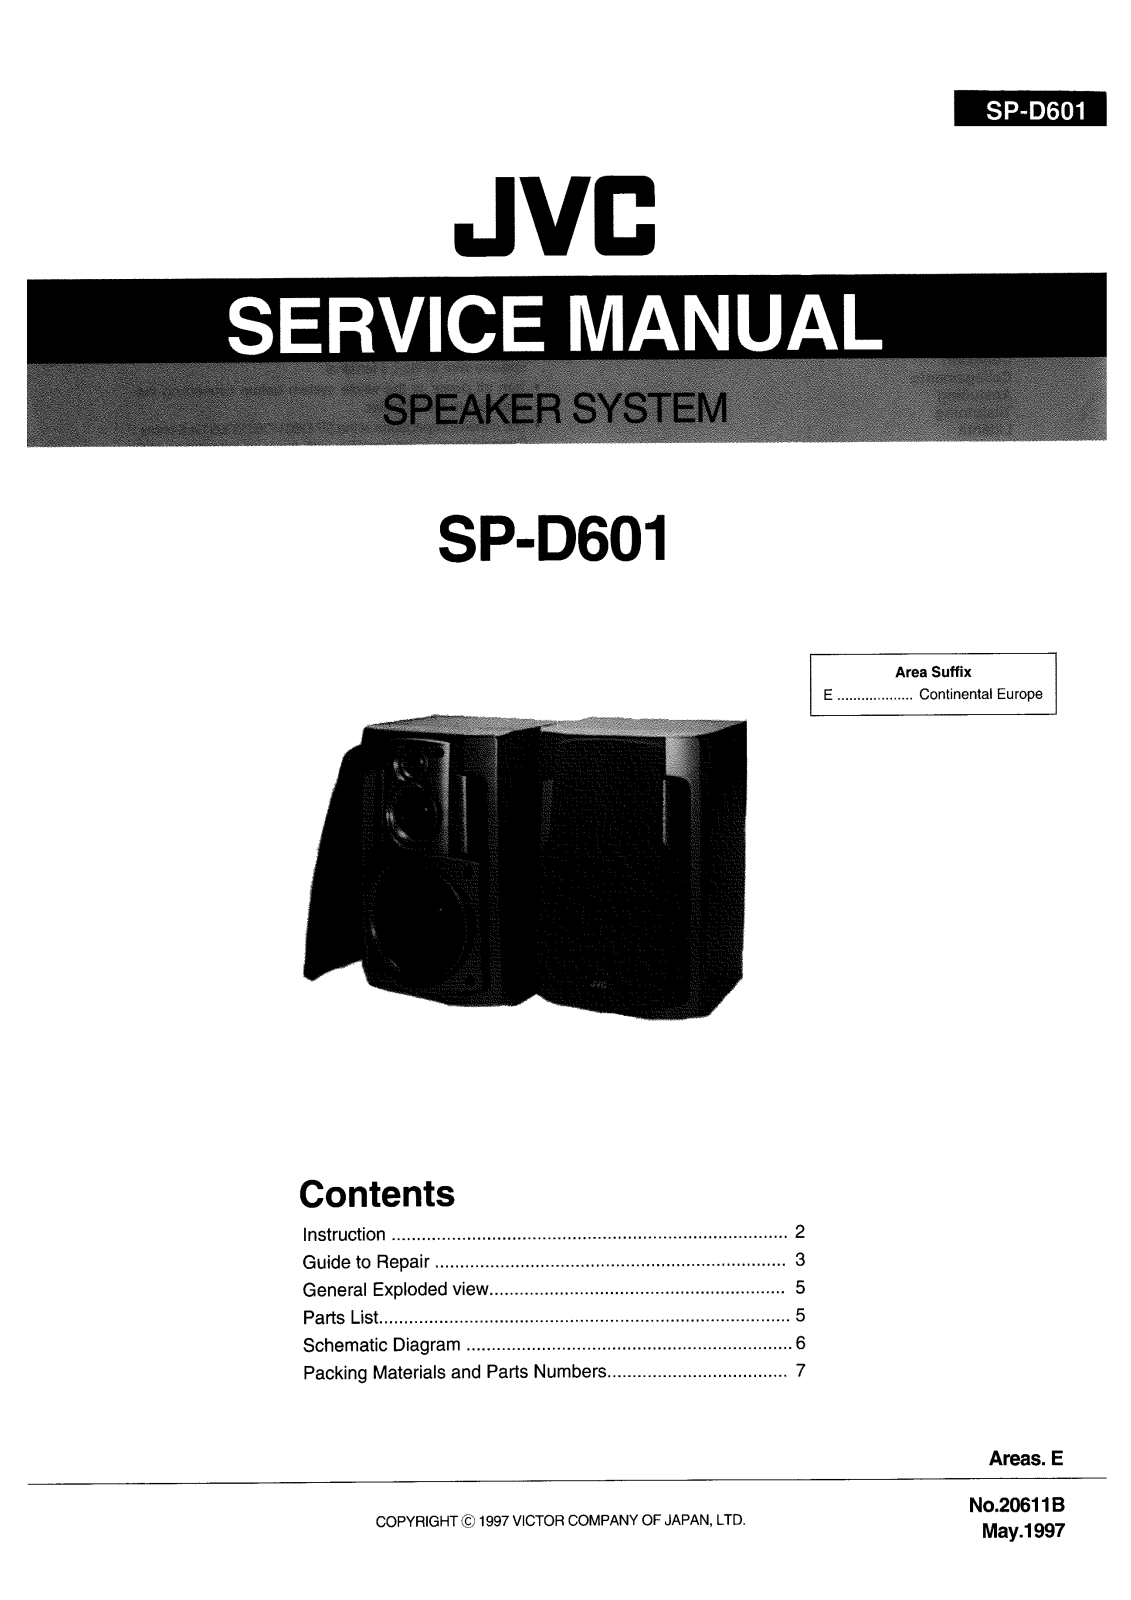 JVC SP-D601 Service Manual